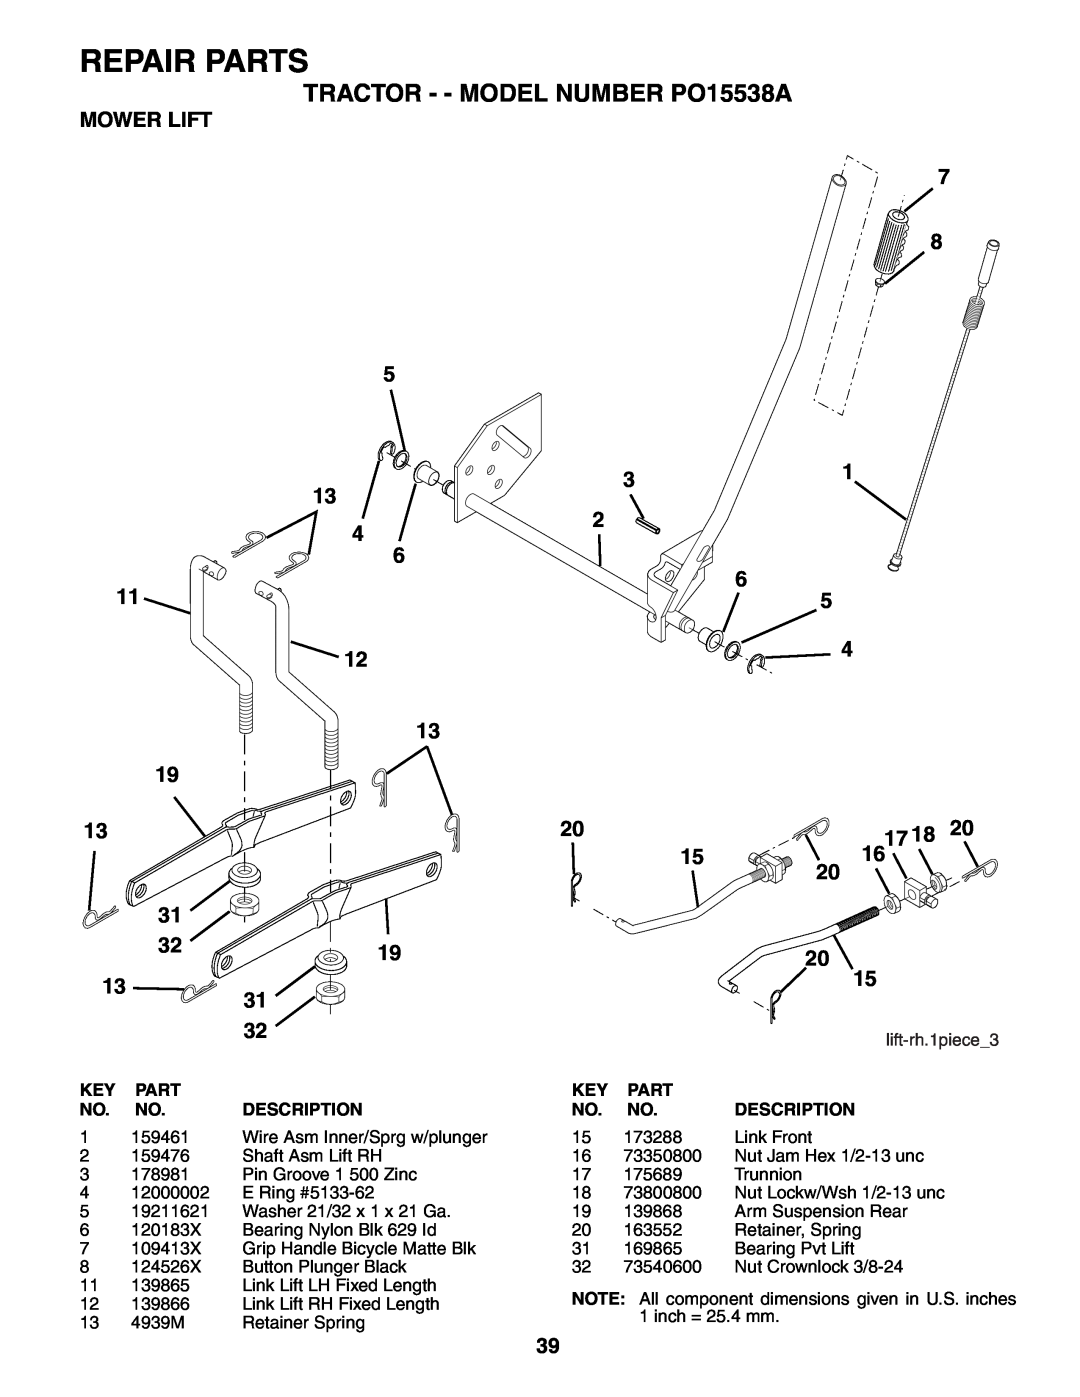 Poulan 188695 manual Mower Lift, Repair Parts, TRACTOR - - MODEL NUMBER PO15538A, Key Part No. No. Description 